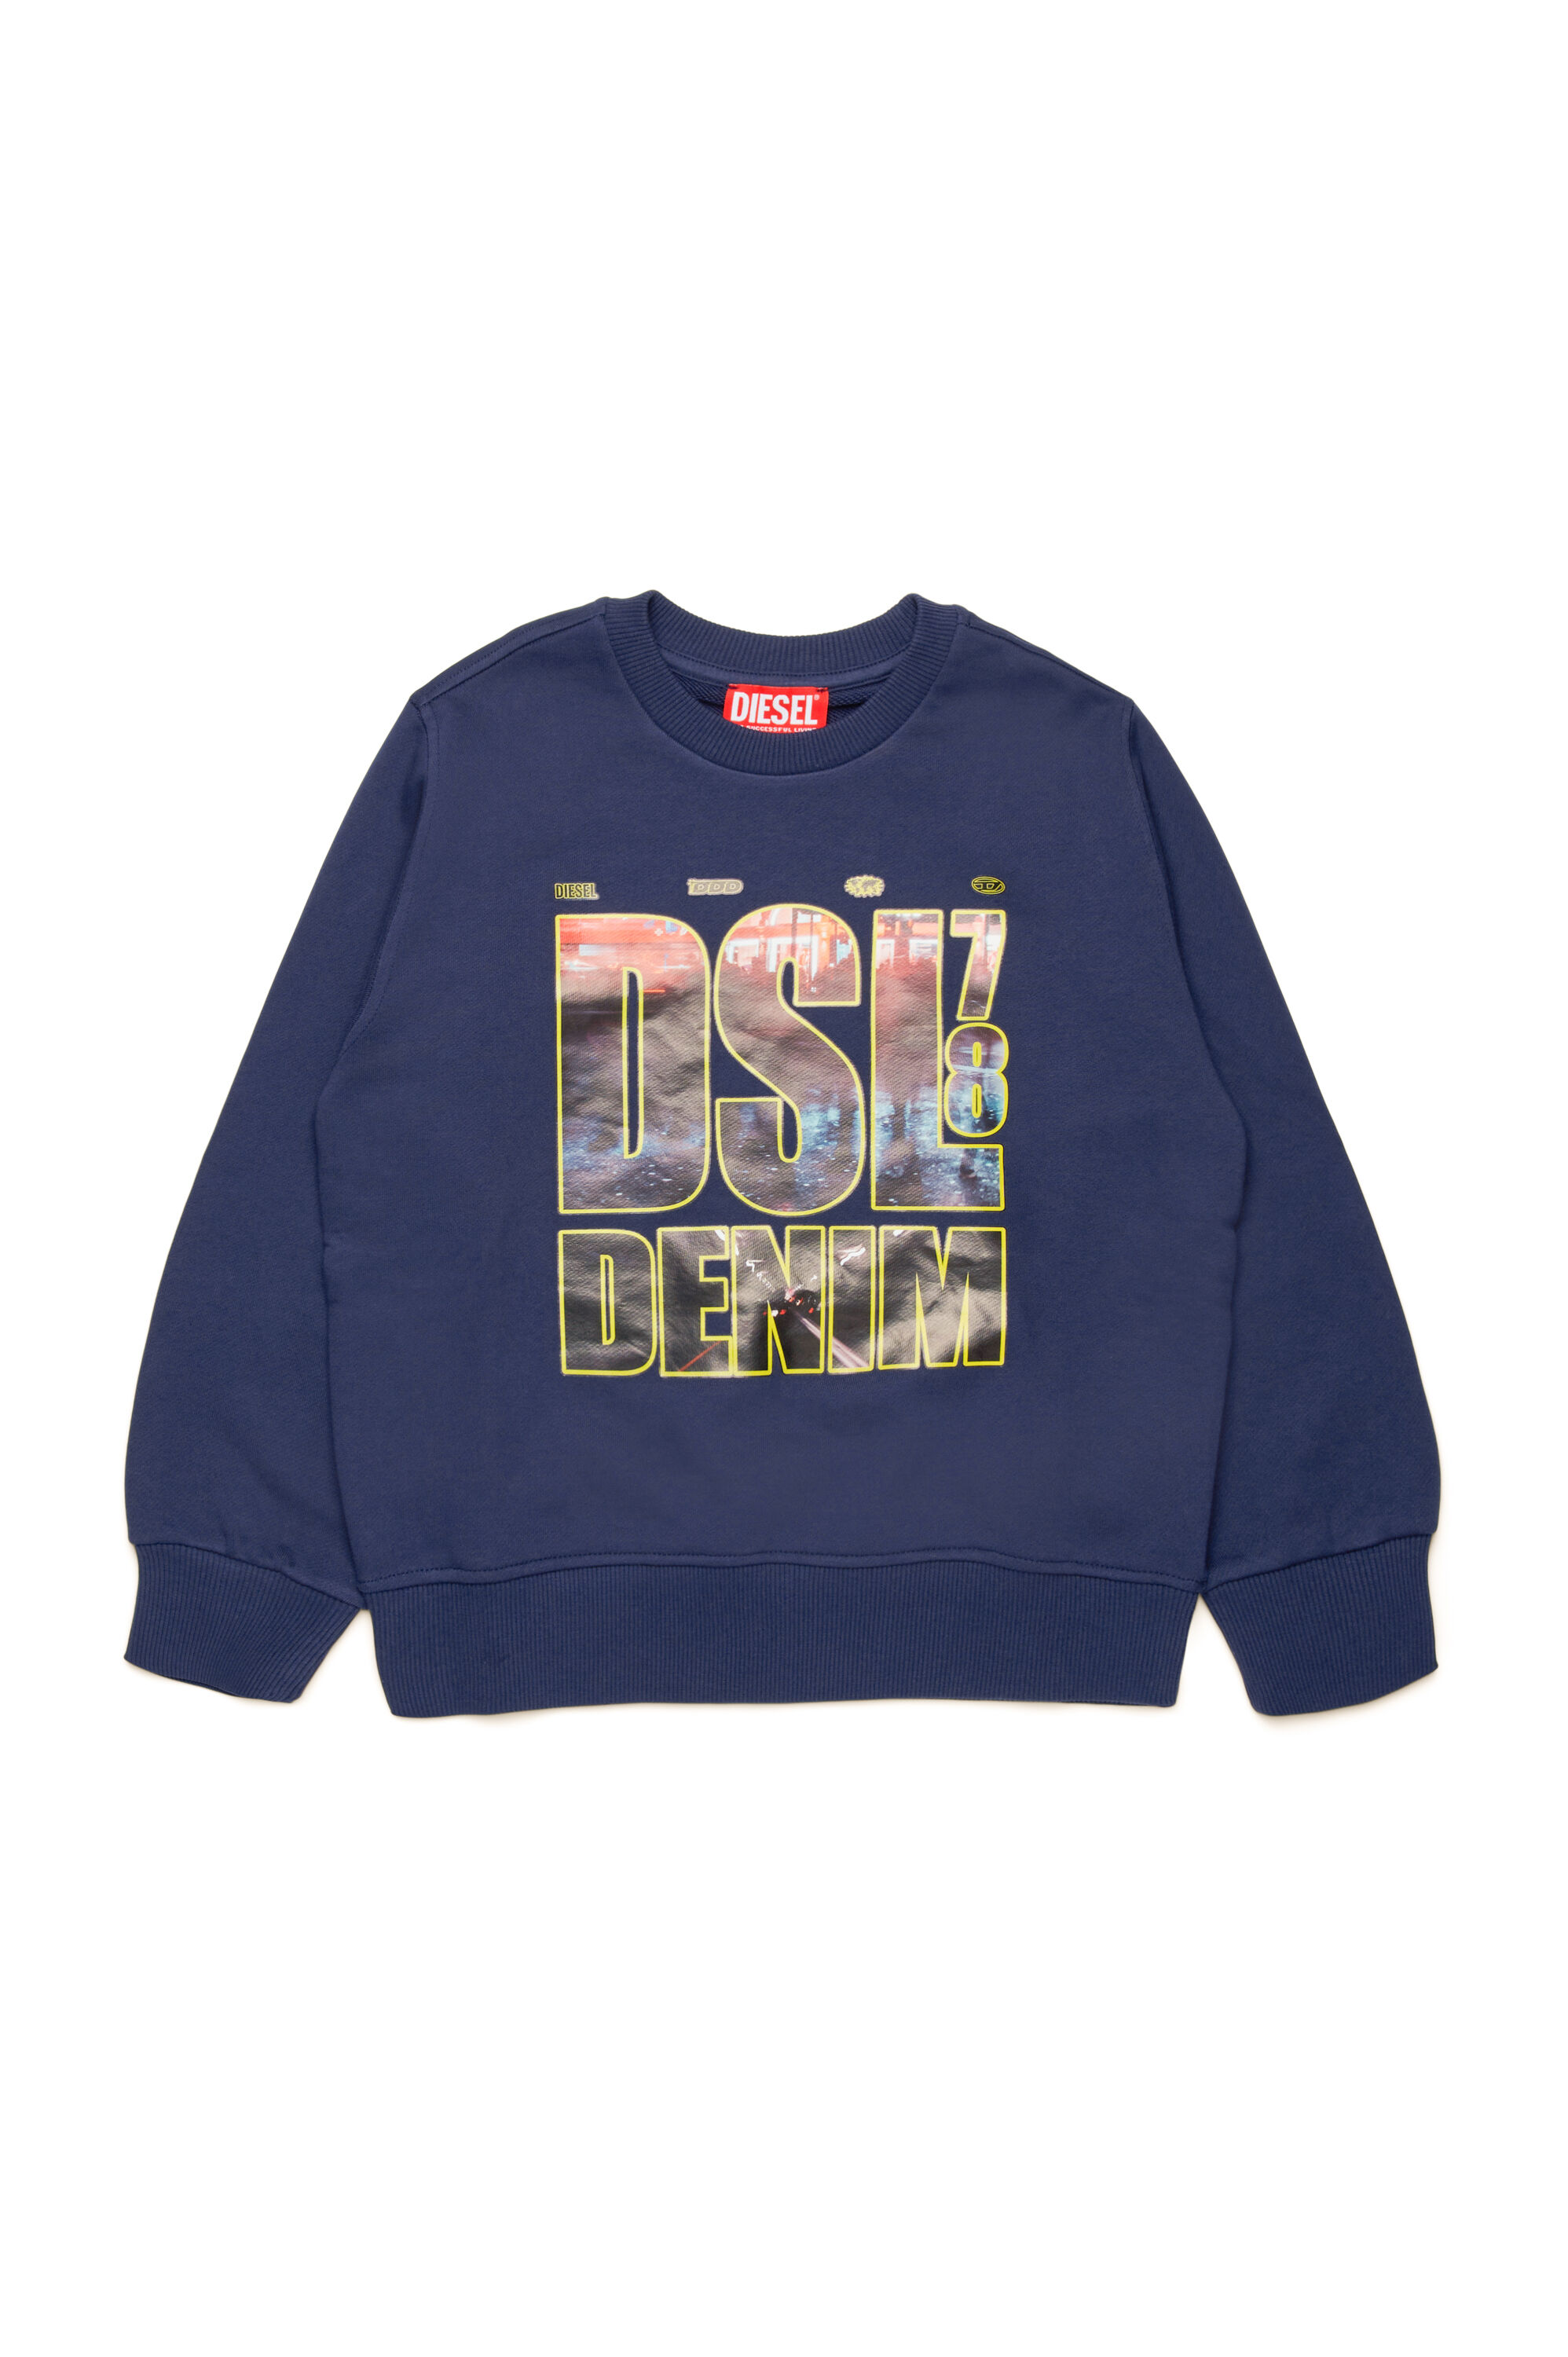 Diesel - SGINNL3 OVER, Man Sweatshirt with DSL DENIM print in Blue - Image 1